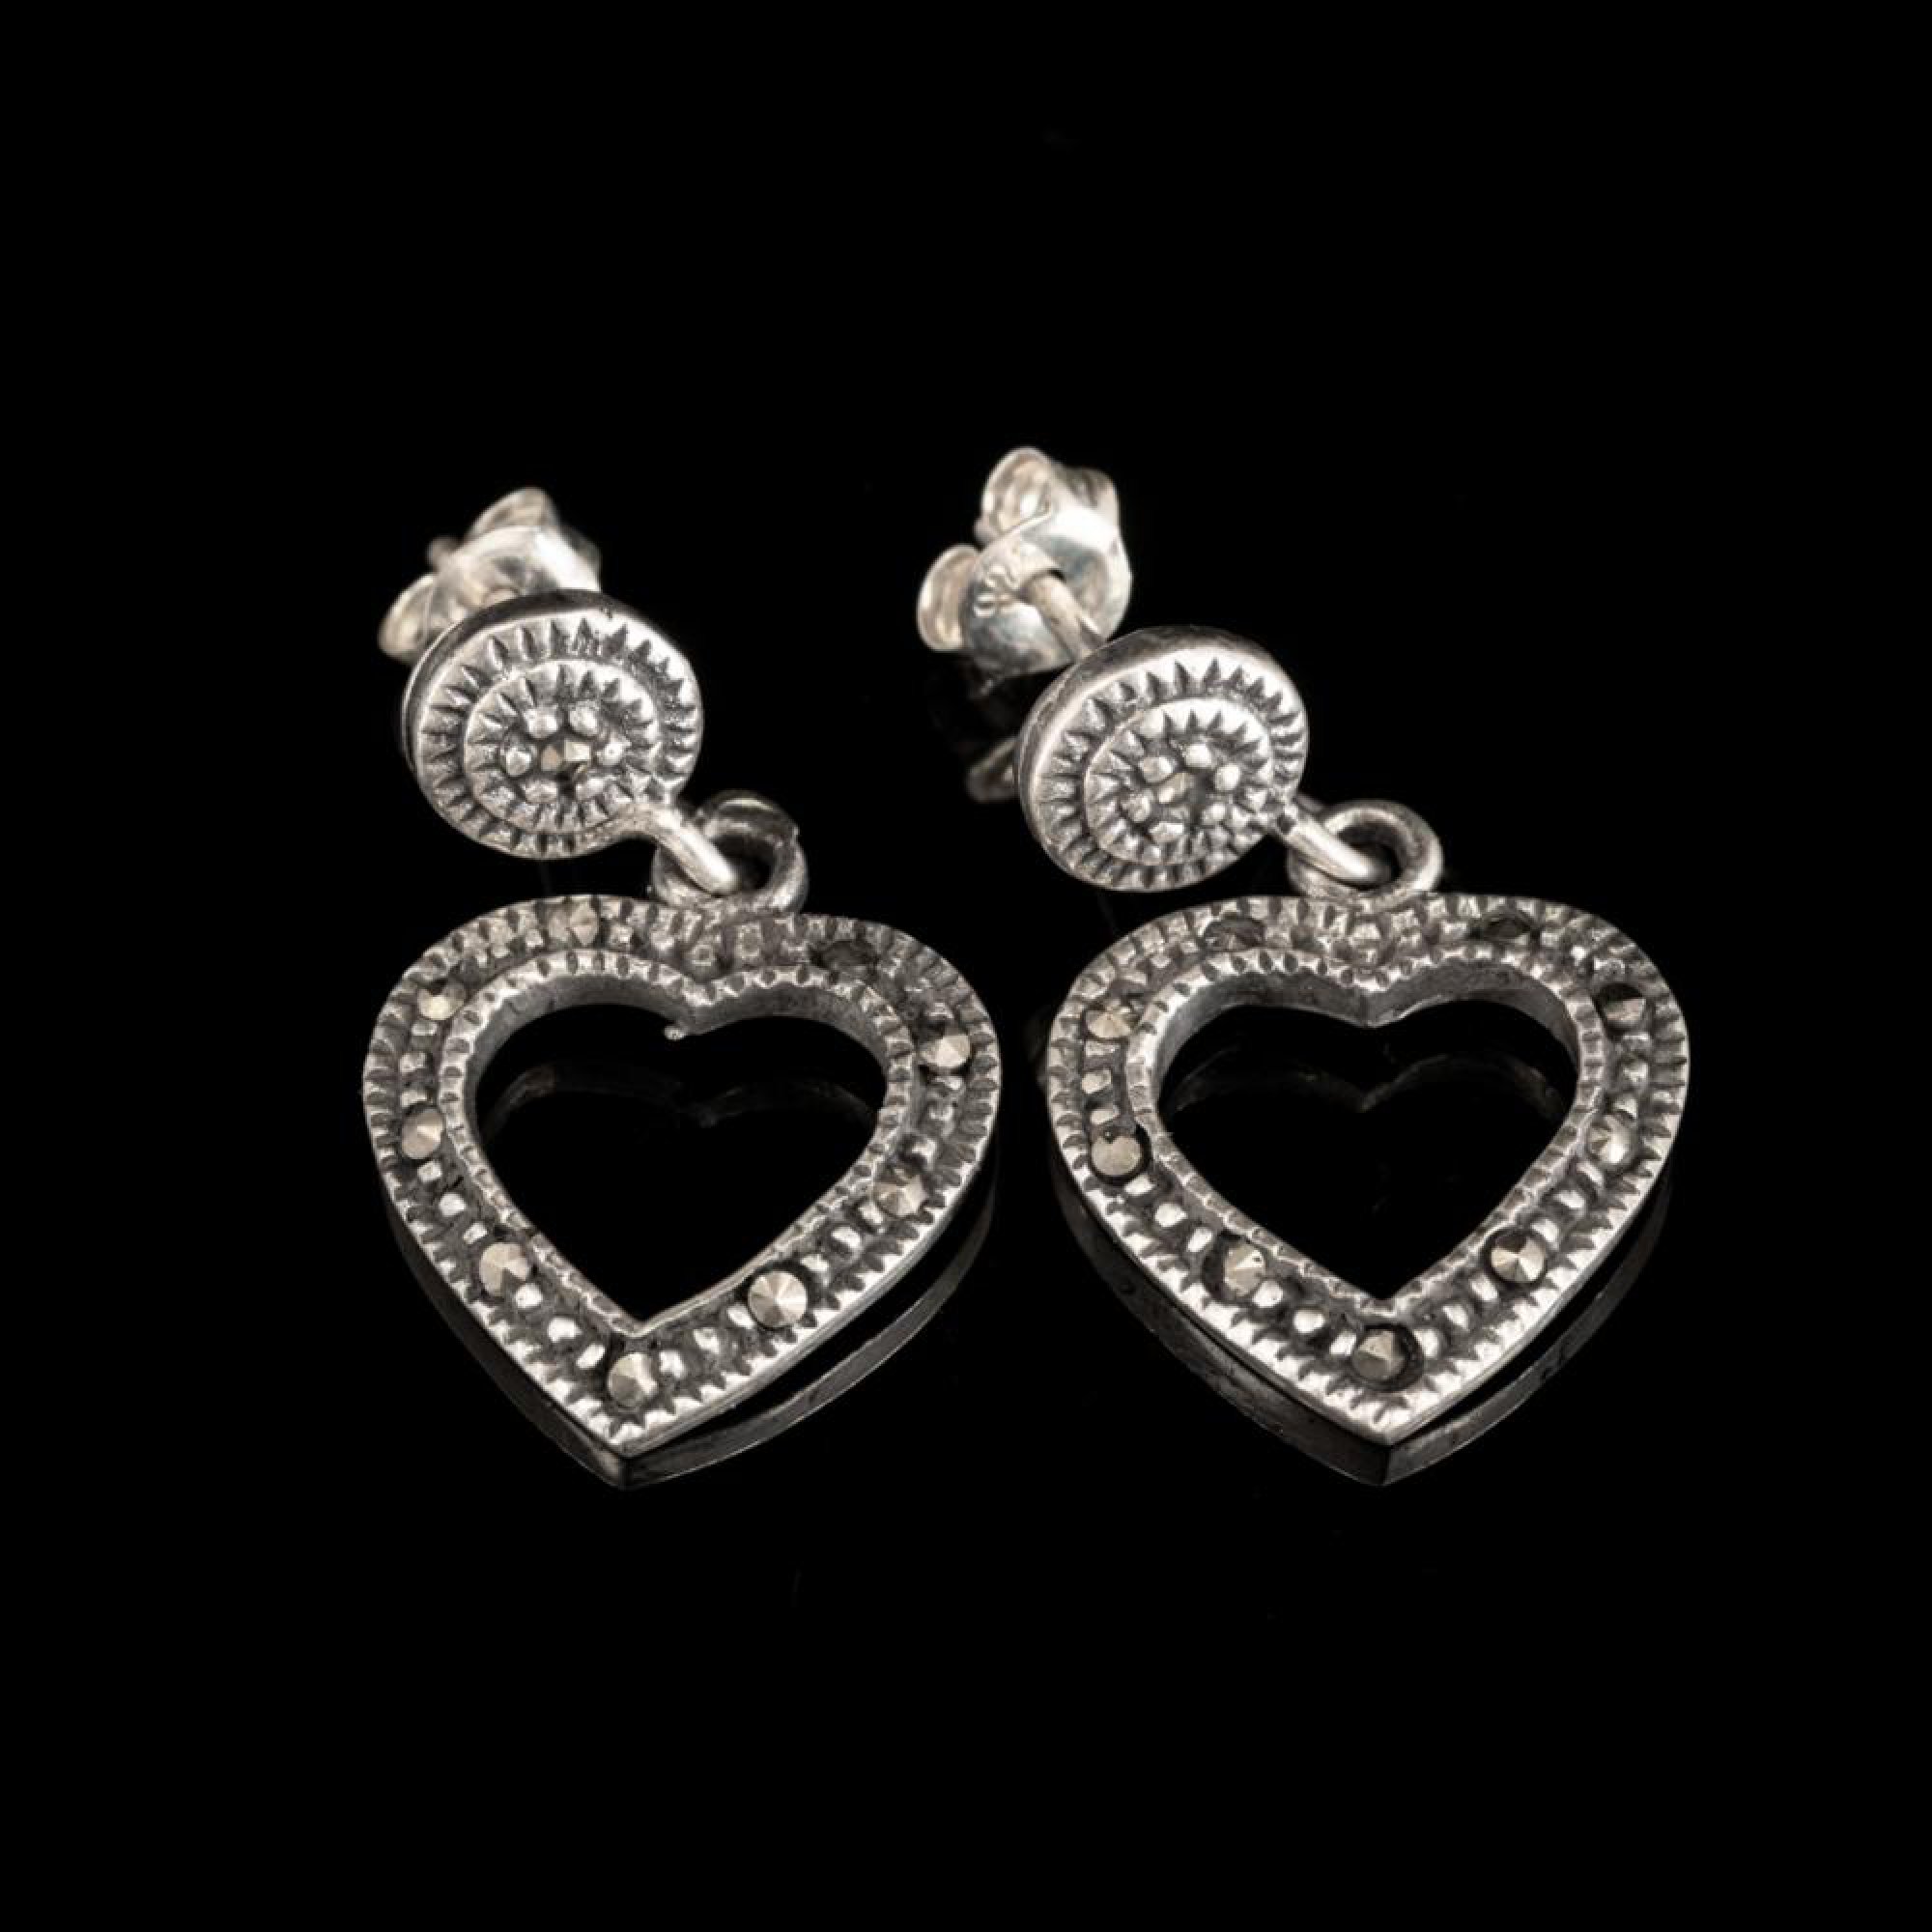 Heart shaped dangle marcasite earrings